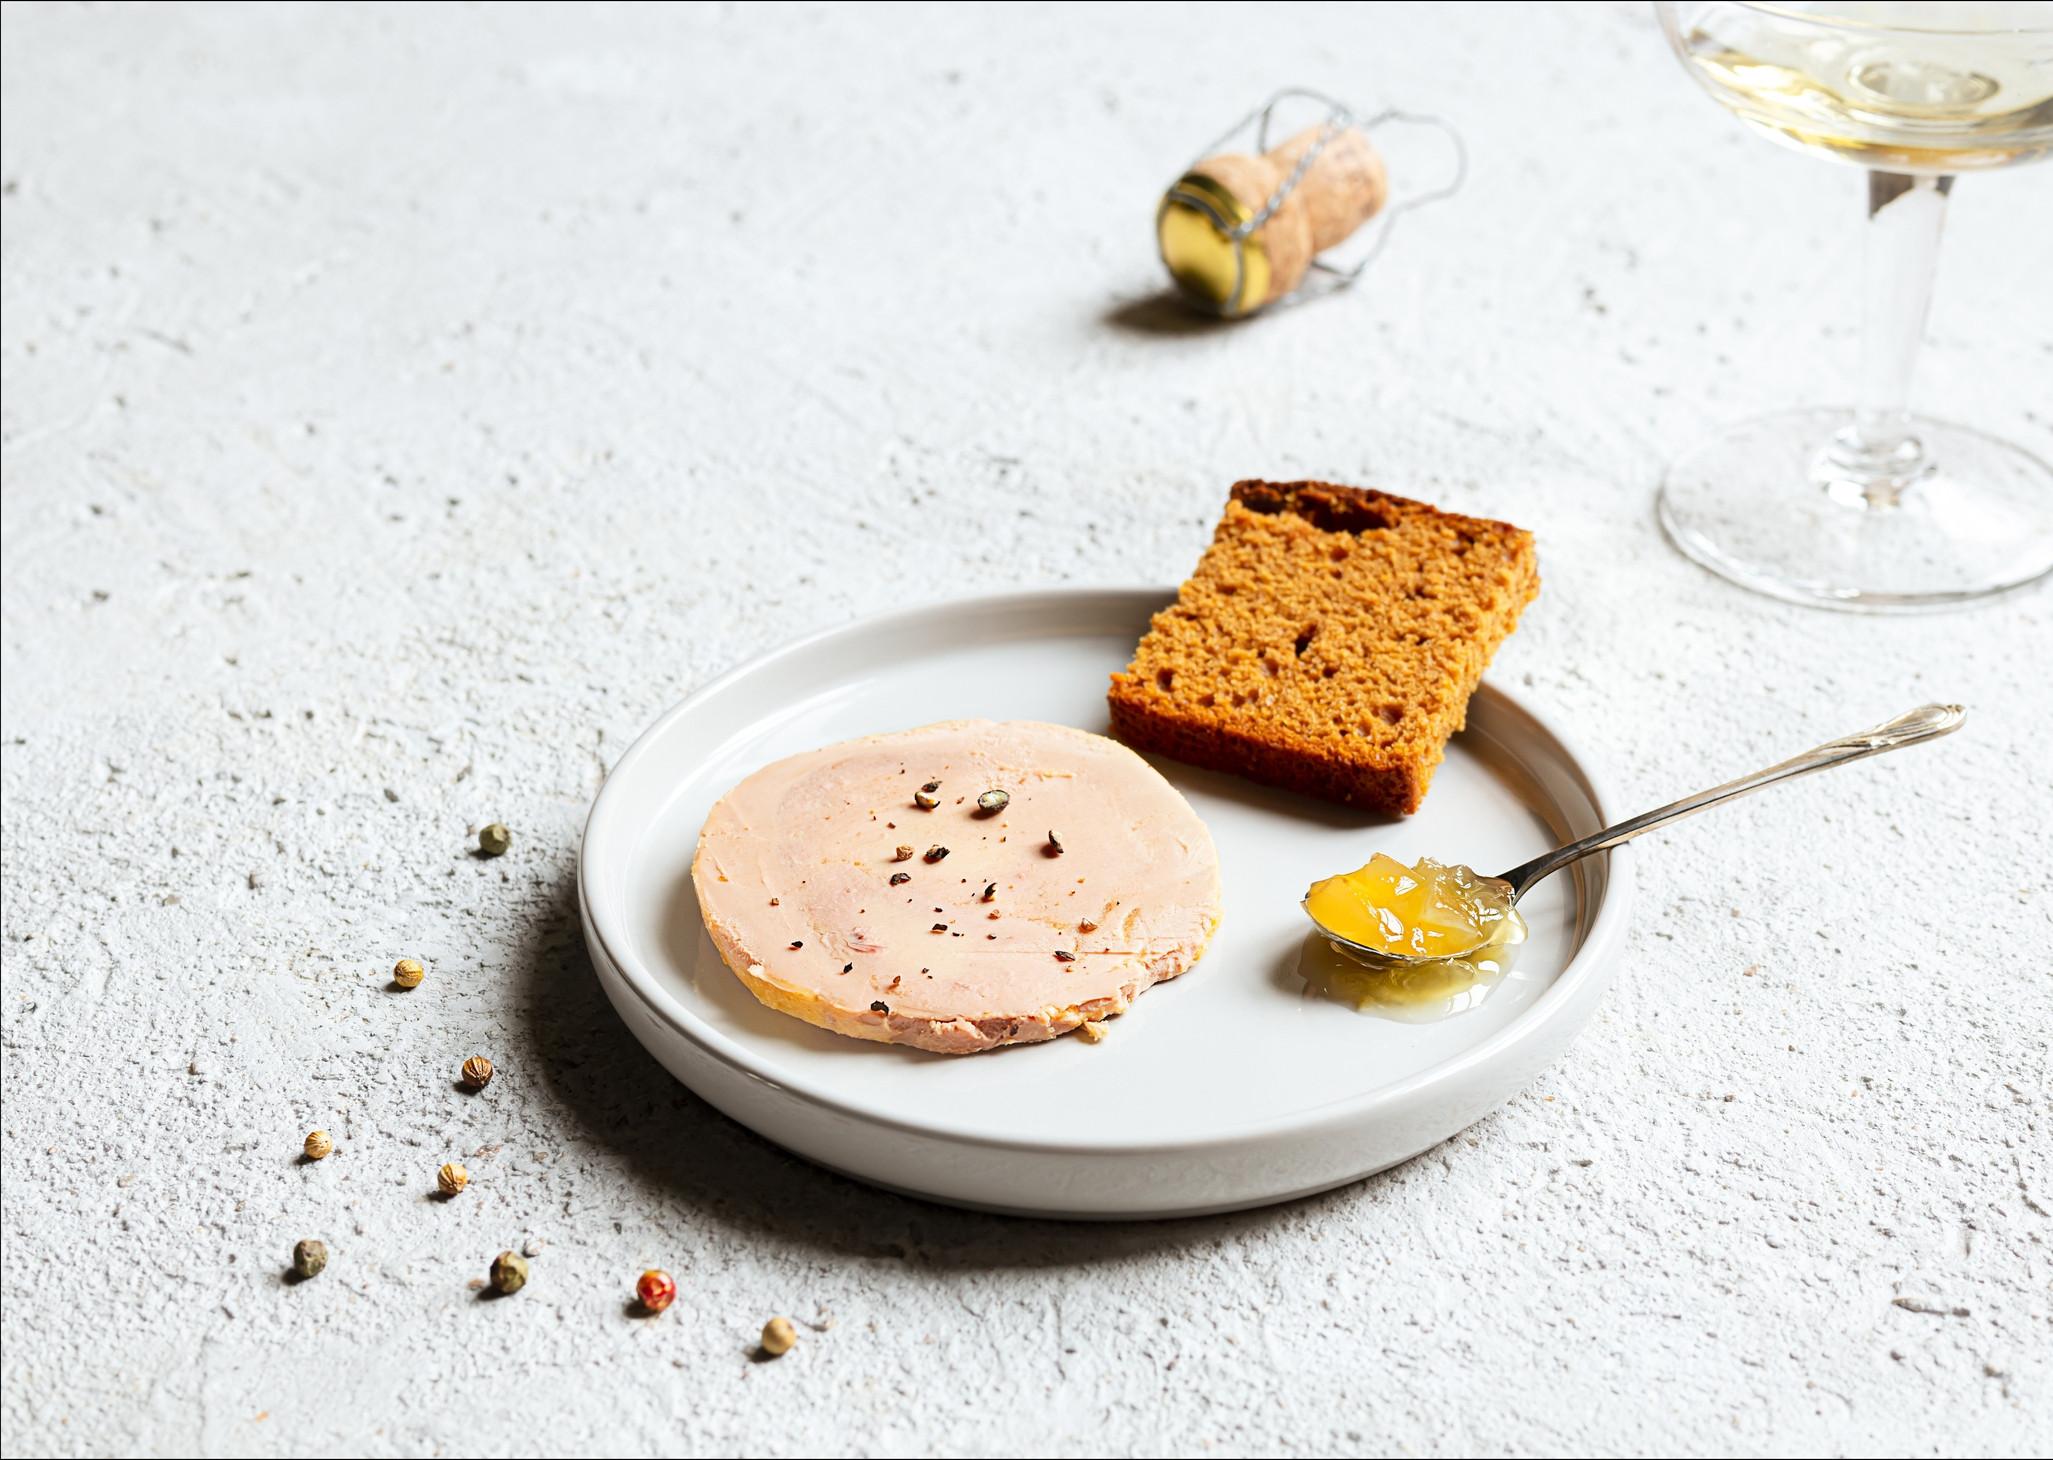 Peut-on manger du foie gras sans culpabiliser? Tout dépend à qui on demande